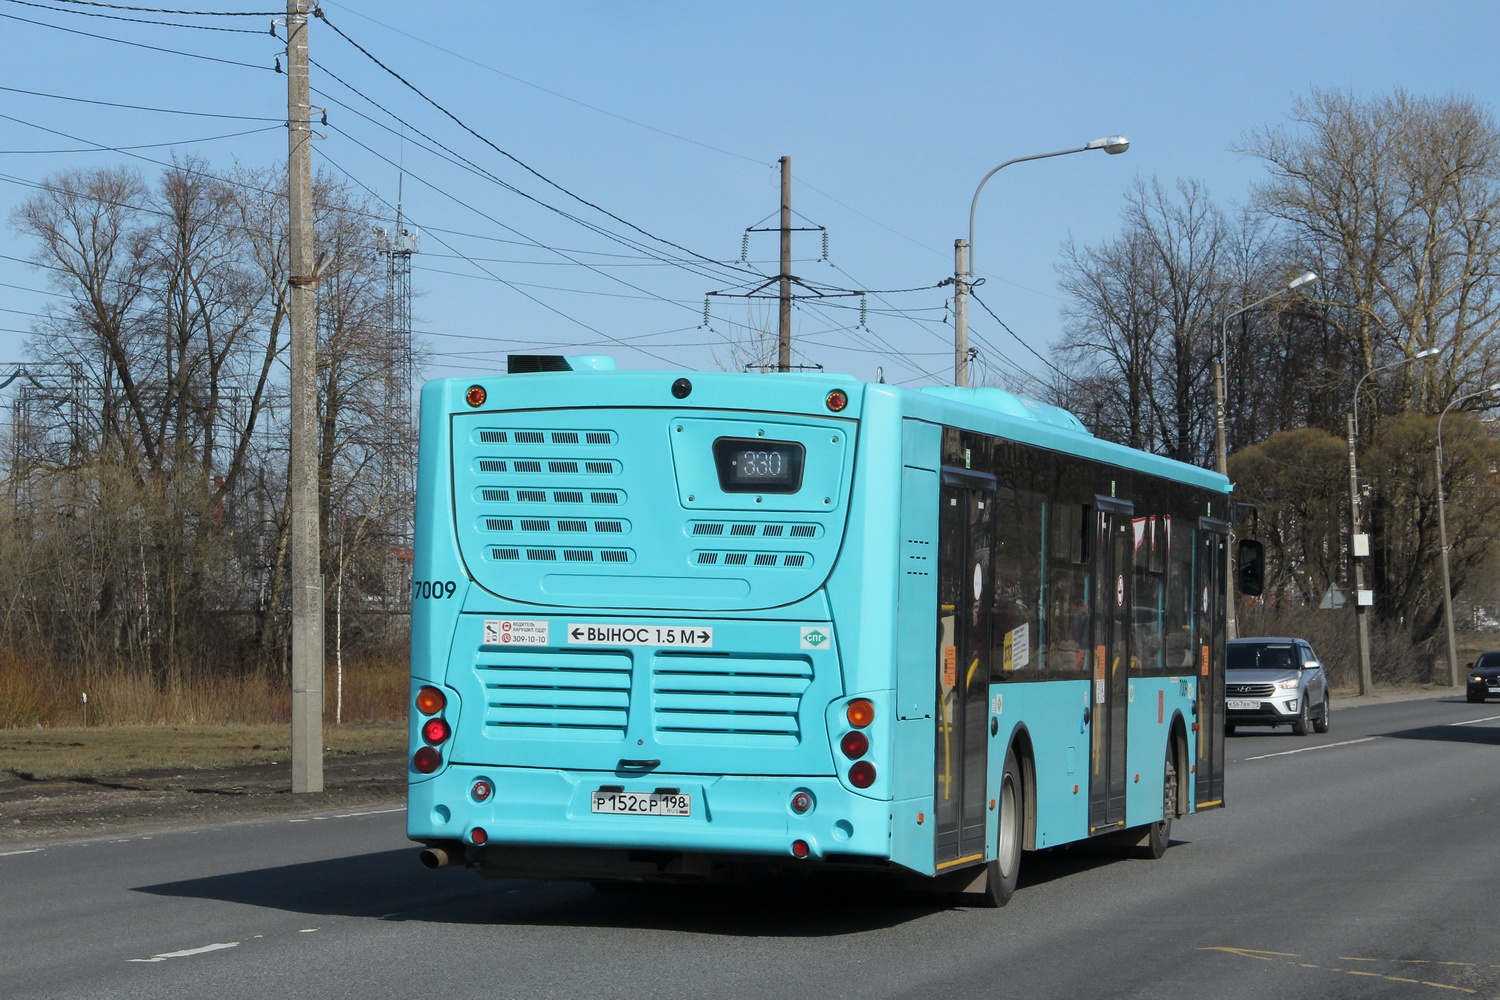 Sanktpēterburga, Volgabus-5270.G2 (LNG) № 7009